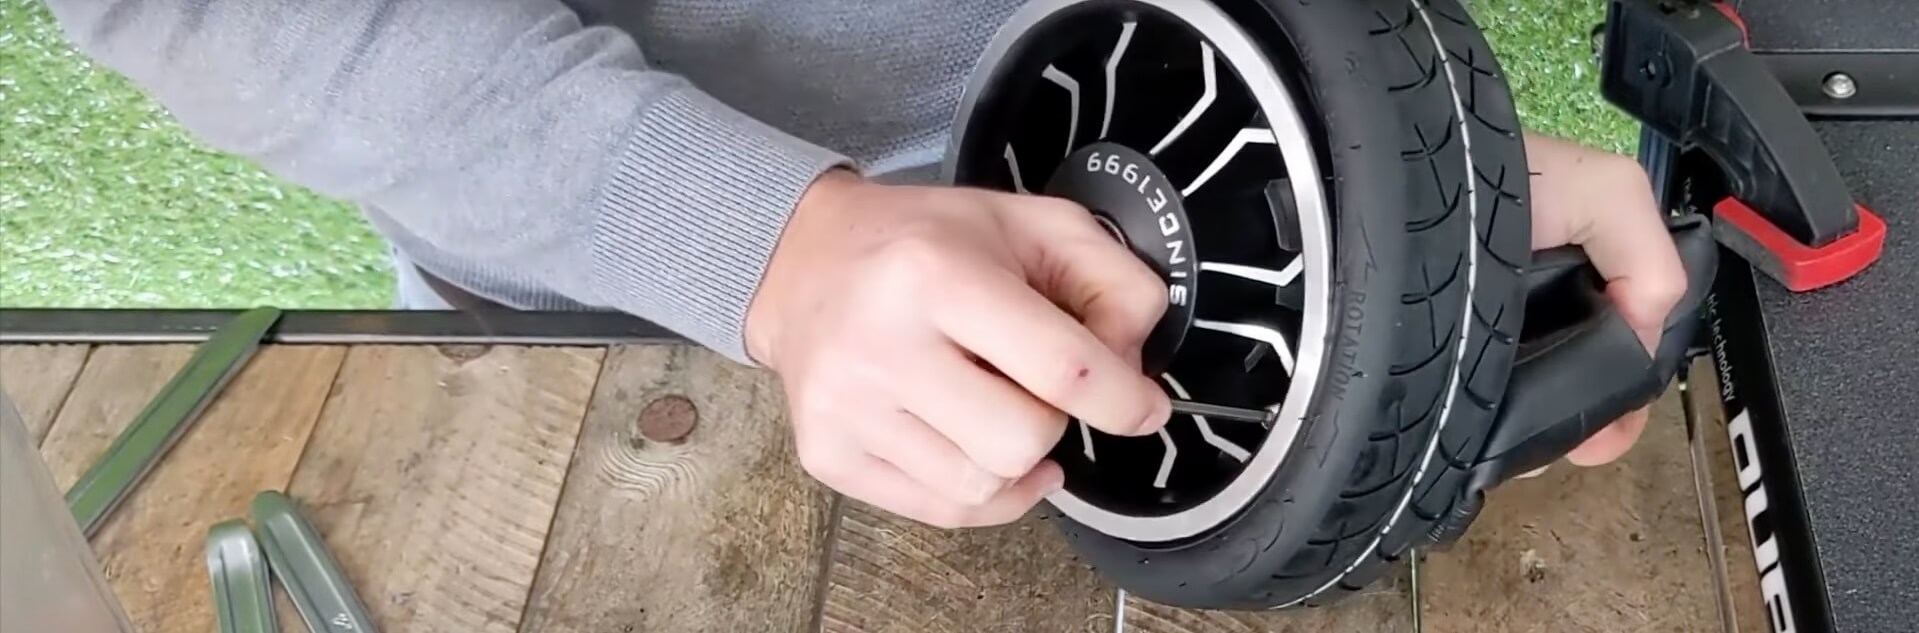 Dualtron Mini - Roue Avant - Changer pneu et chambre a air